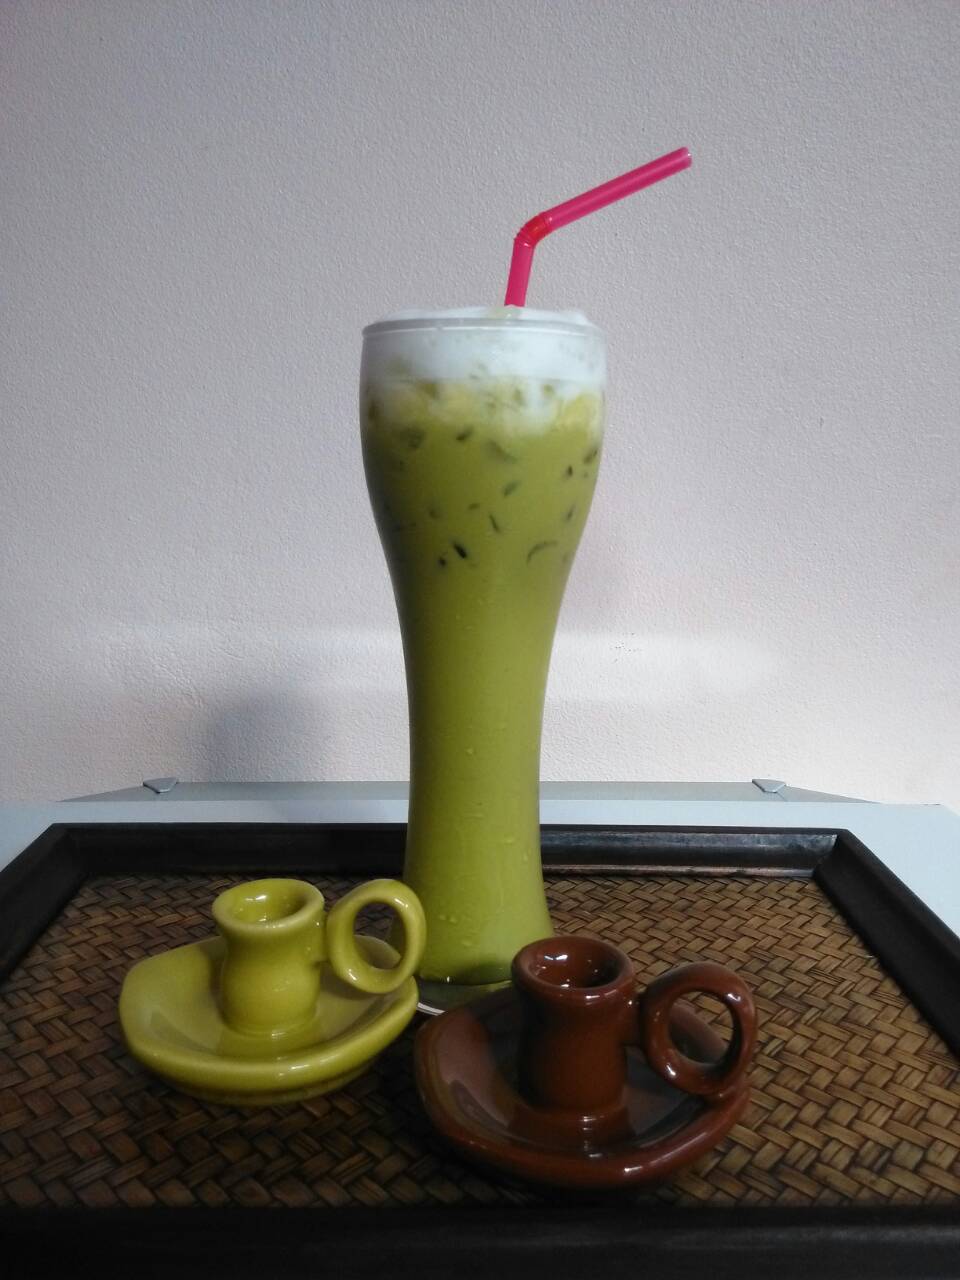 ชาเขียวนม สูตรปรุงแต่งพิเศษ (ตราดอยปู่หมื่น)  Milk Green Tea (Doi Pumuen Brand)